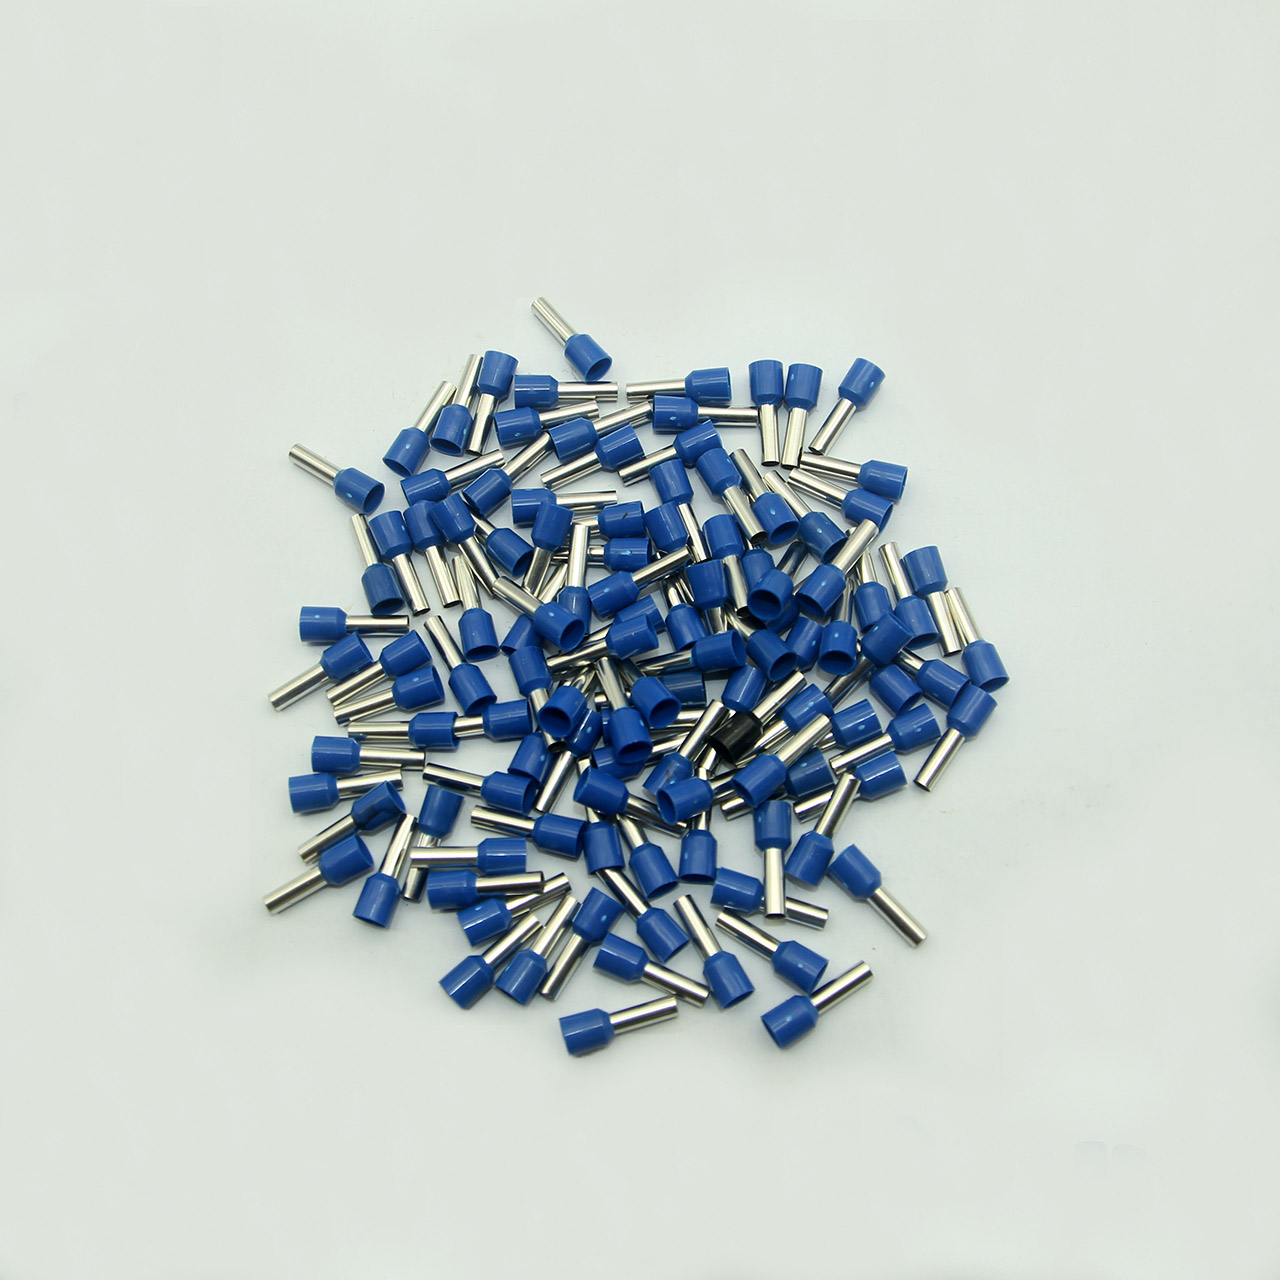 Túi 100 đầu cos pin rỗng E6012 bọc nhựa xanh